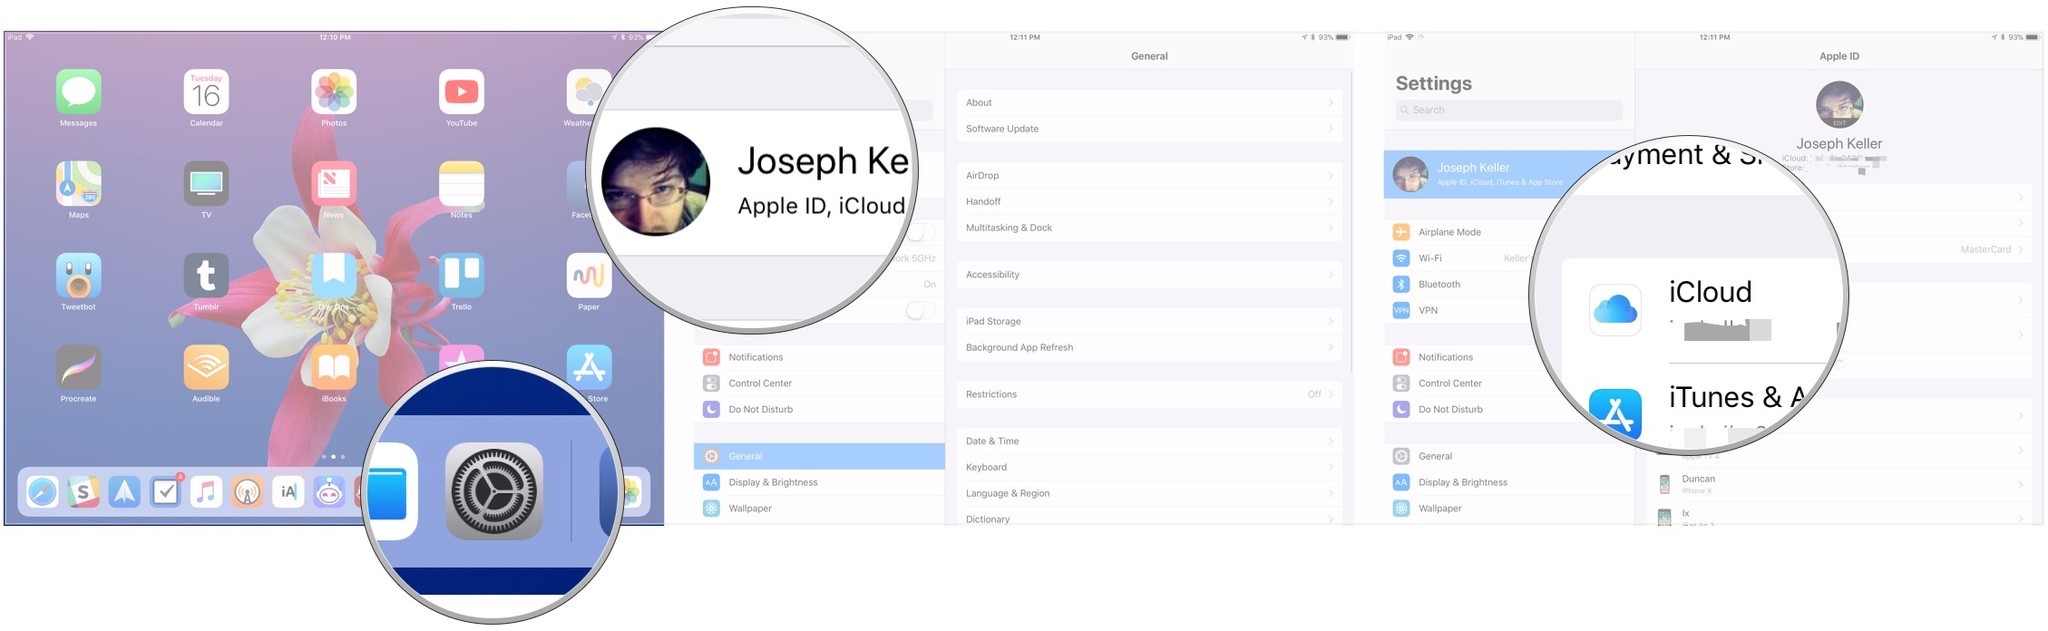 Перенесите данные с помощью iCloud для резервного копирования, показывая шаги: откройте «Настройки», коснитесь баннера Apple ID, коснитесь iClouda.